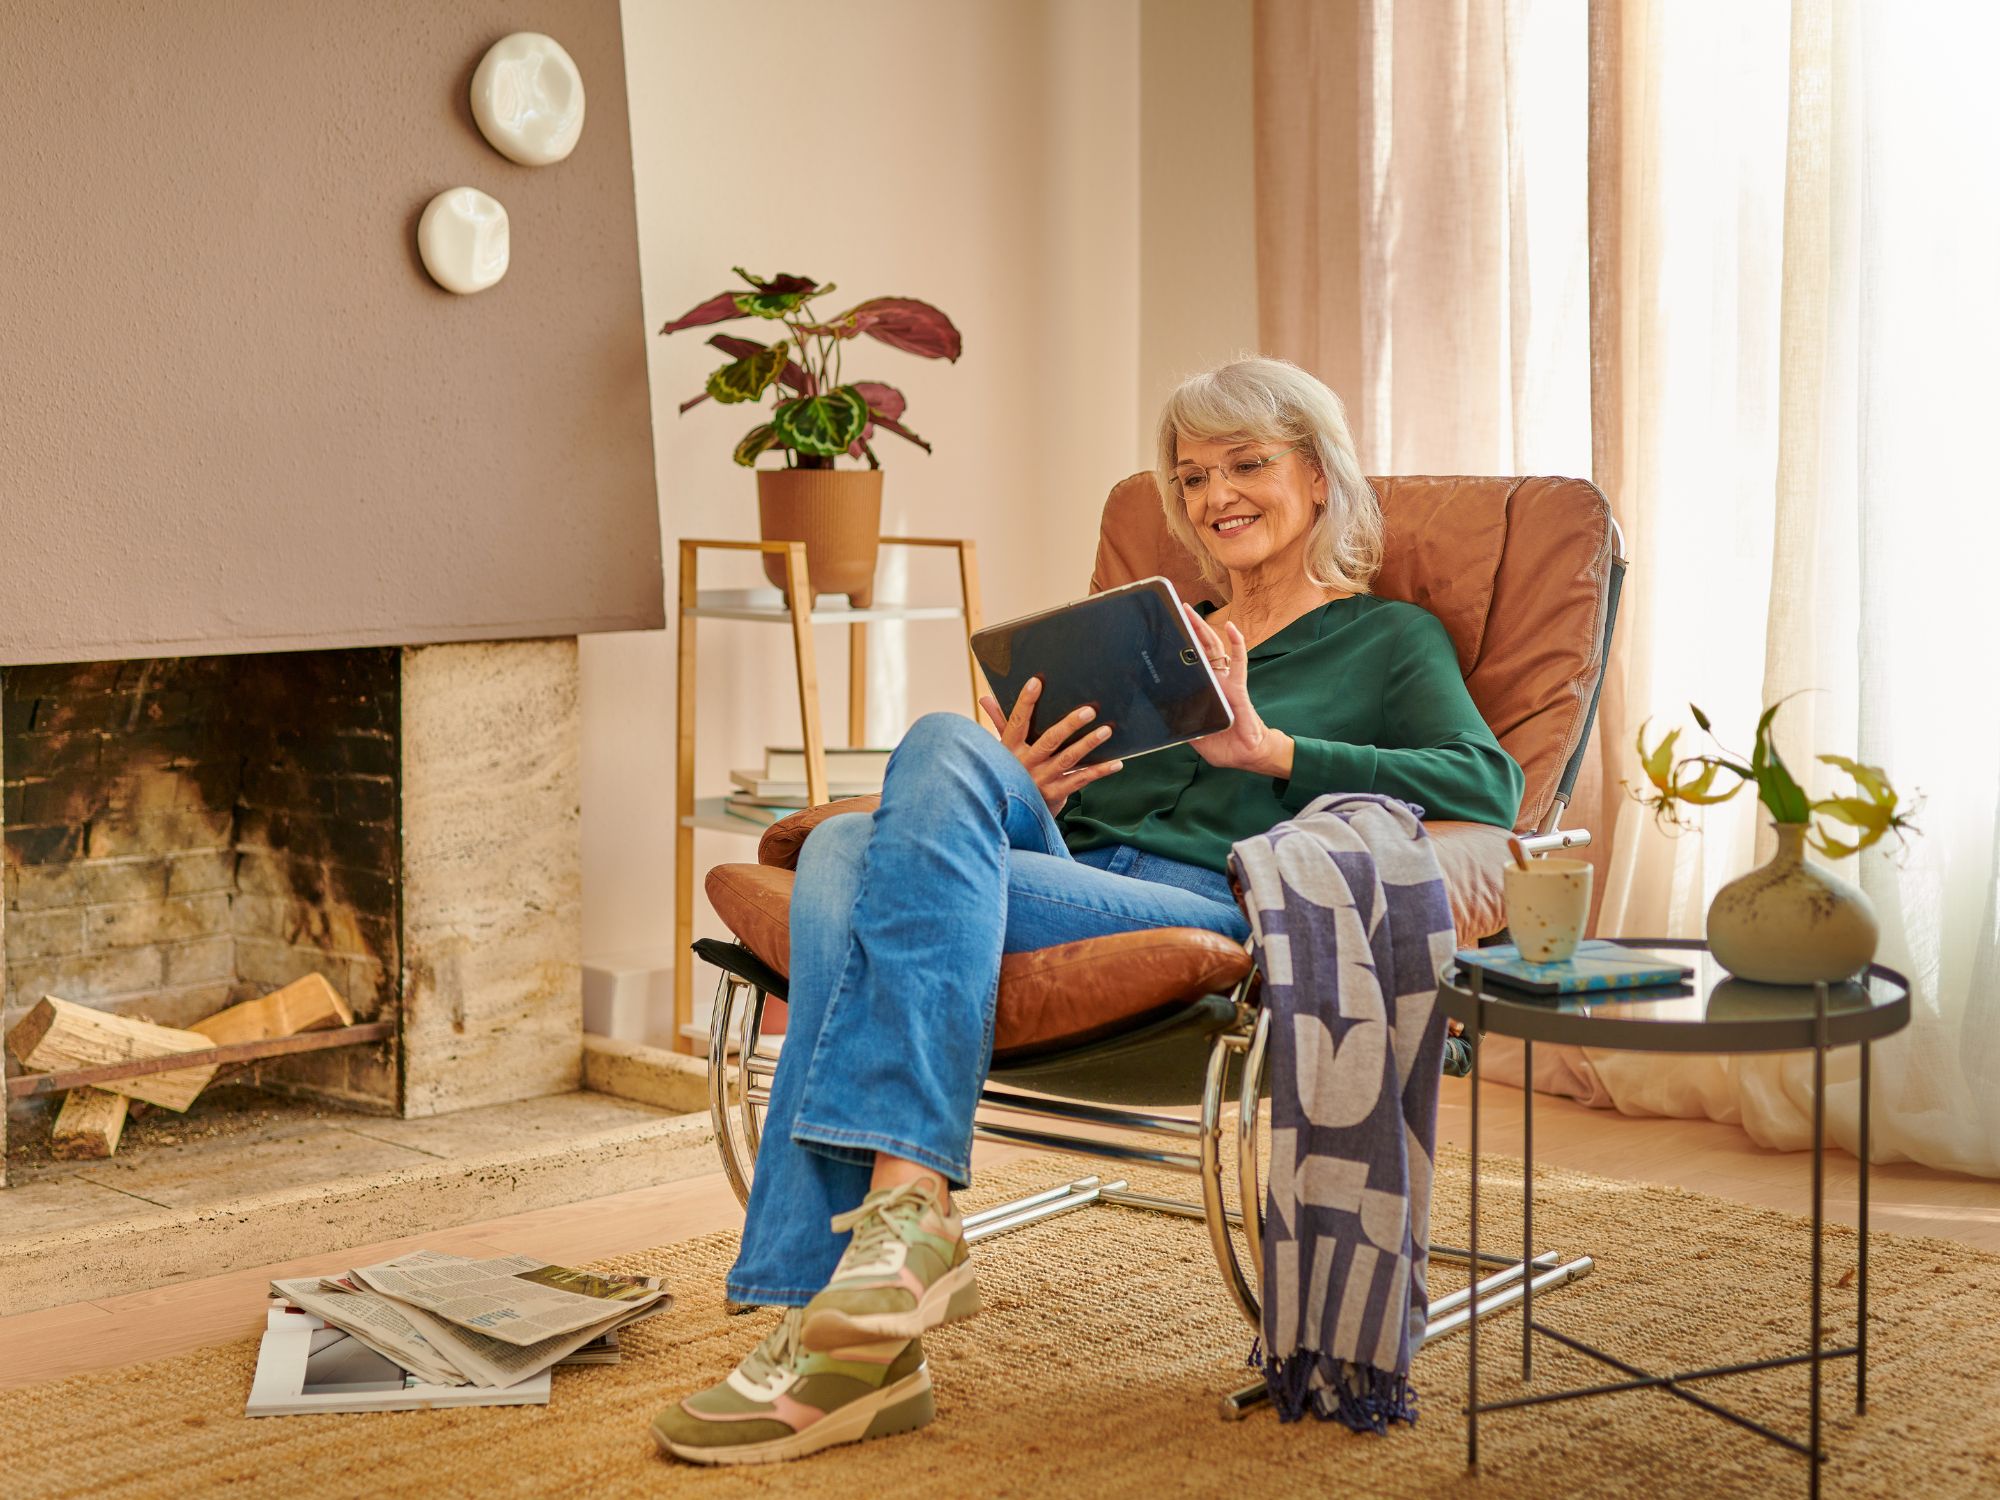 Vrouw van middelbare leeftijd speelt thuis een spelletje op haar tablet.